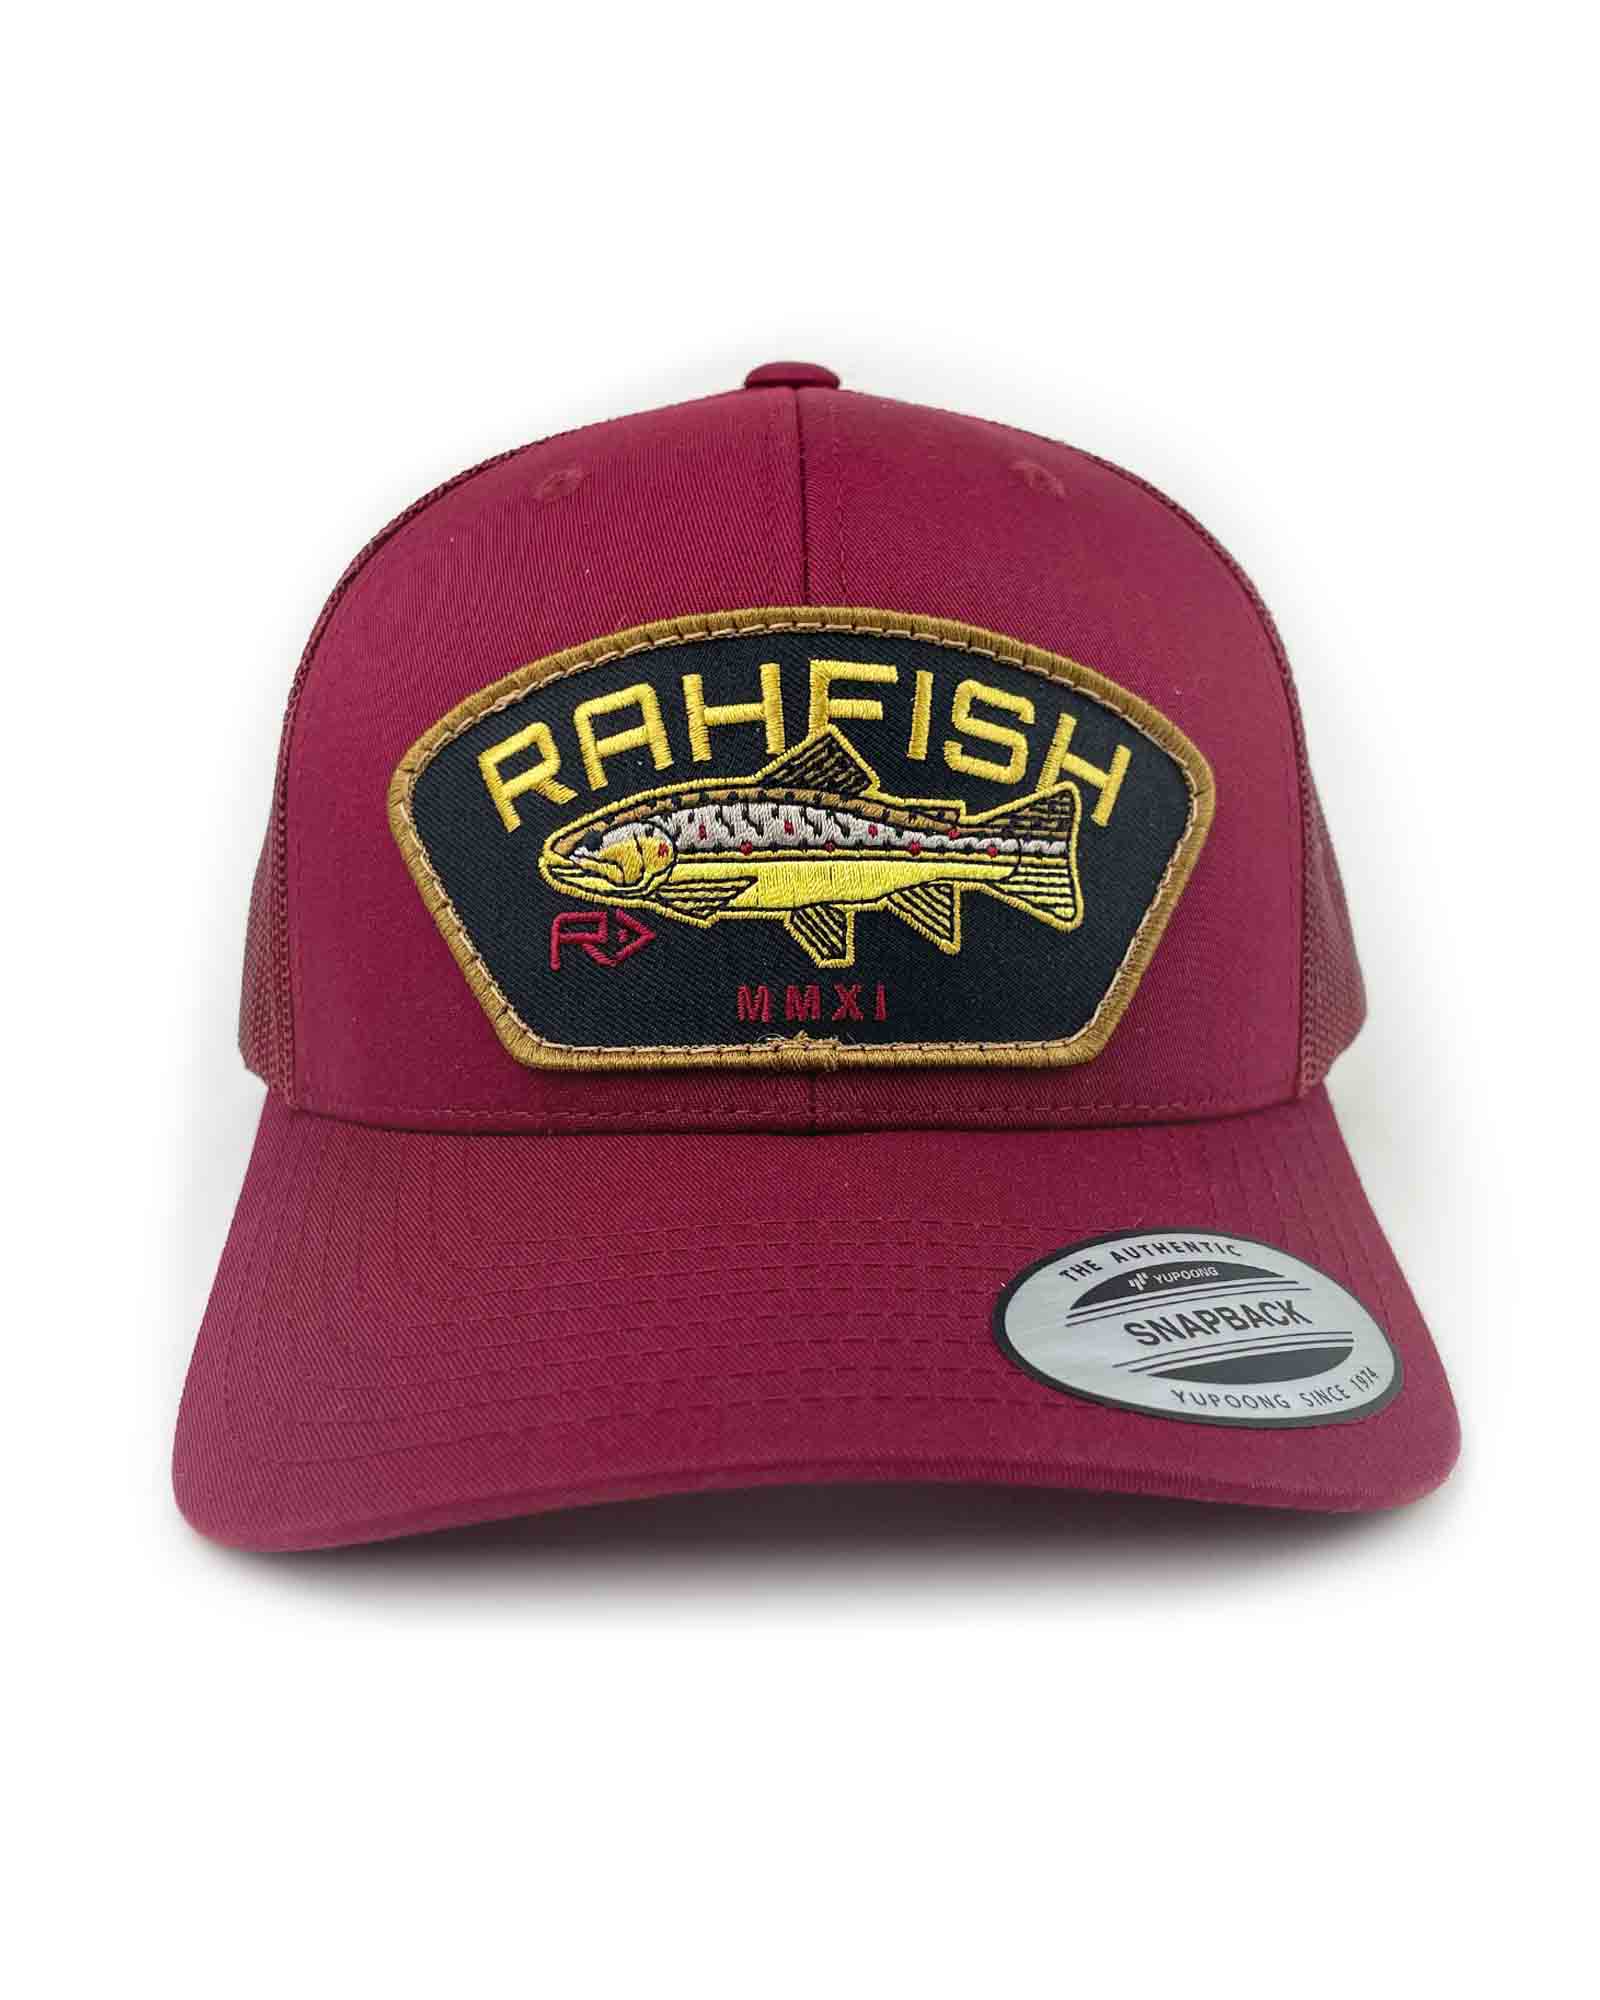 RAHFISH BROWN TROUT TRUCKER HAT